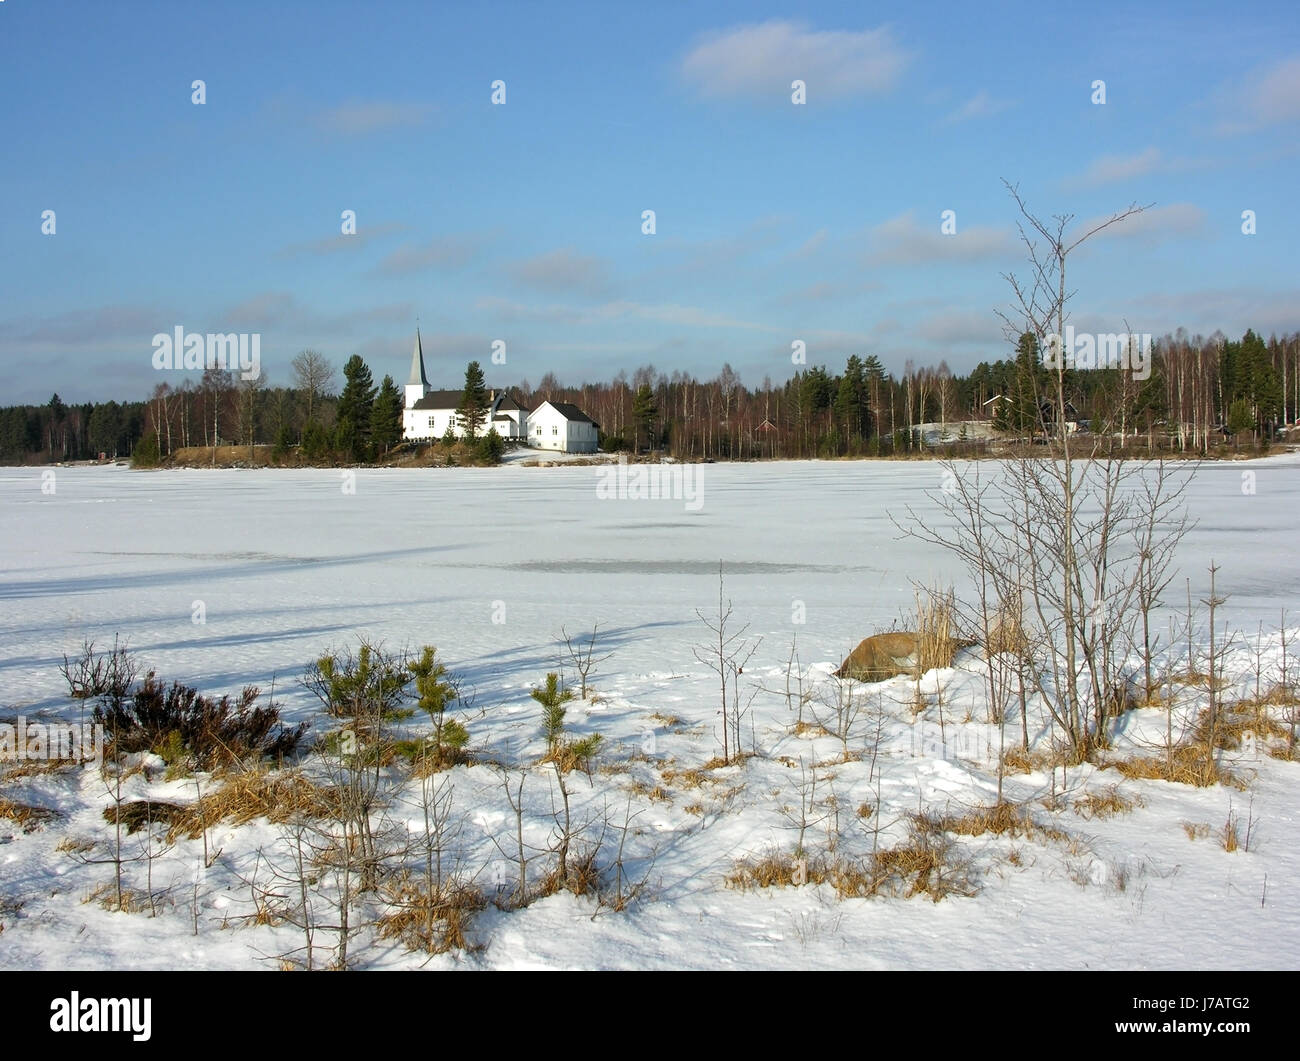 La Svezia Norvegia paesaggio invernale scandinavia ghiaccio freddo inverno Neve vedere norwegen Foto Stock